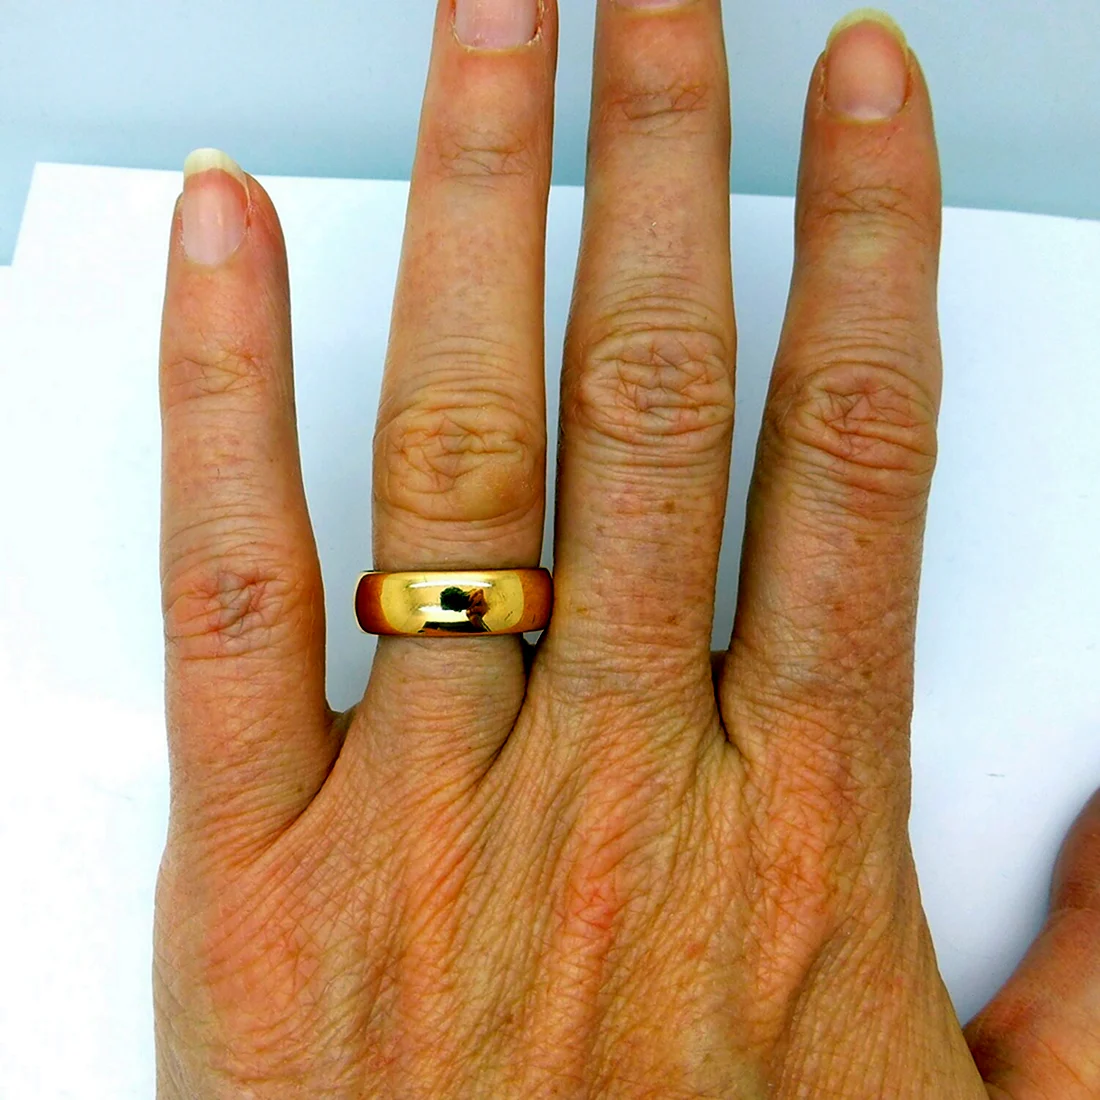 Широкое обручальное кольцо на пальце